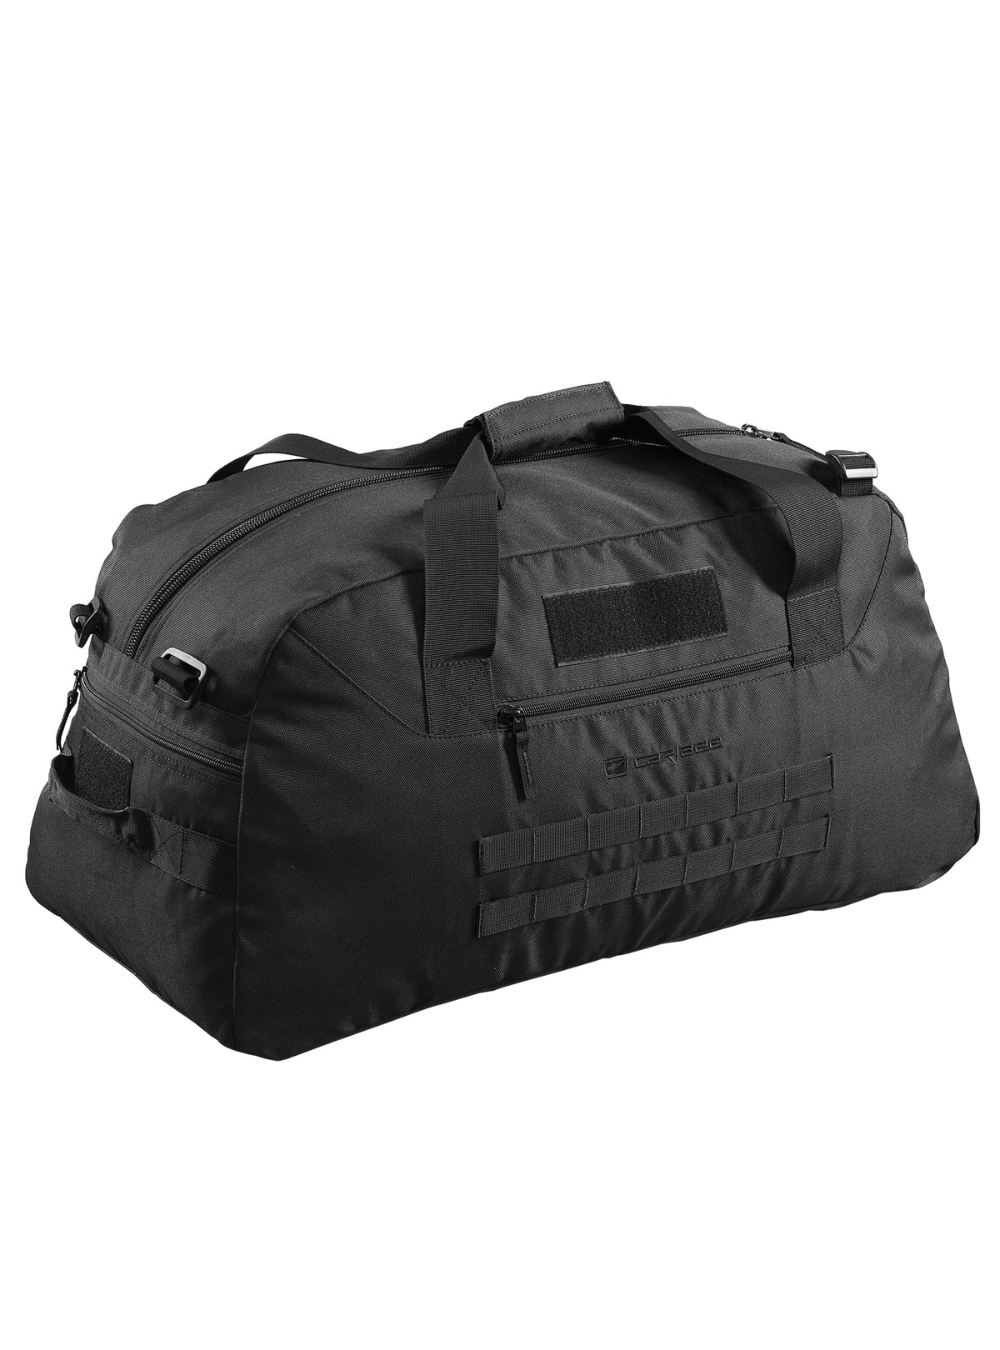 SALE - Caribee OP's Duffle 65L Gear Bag